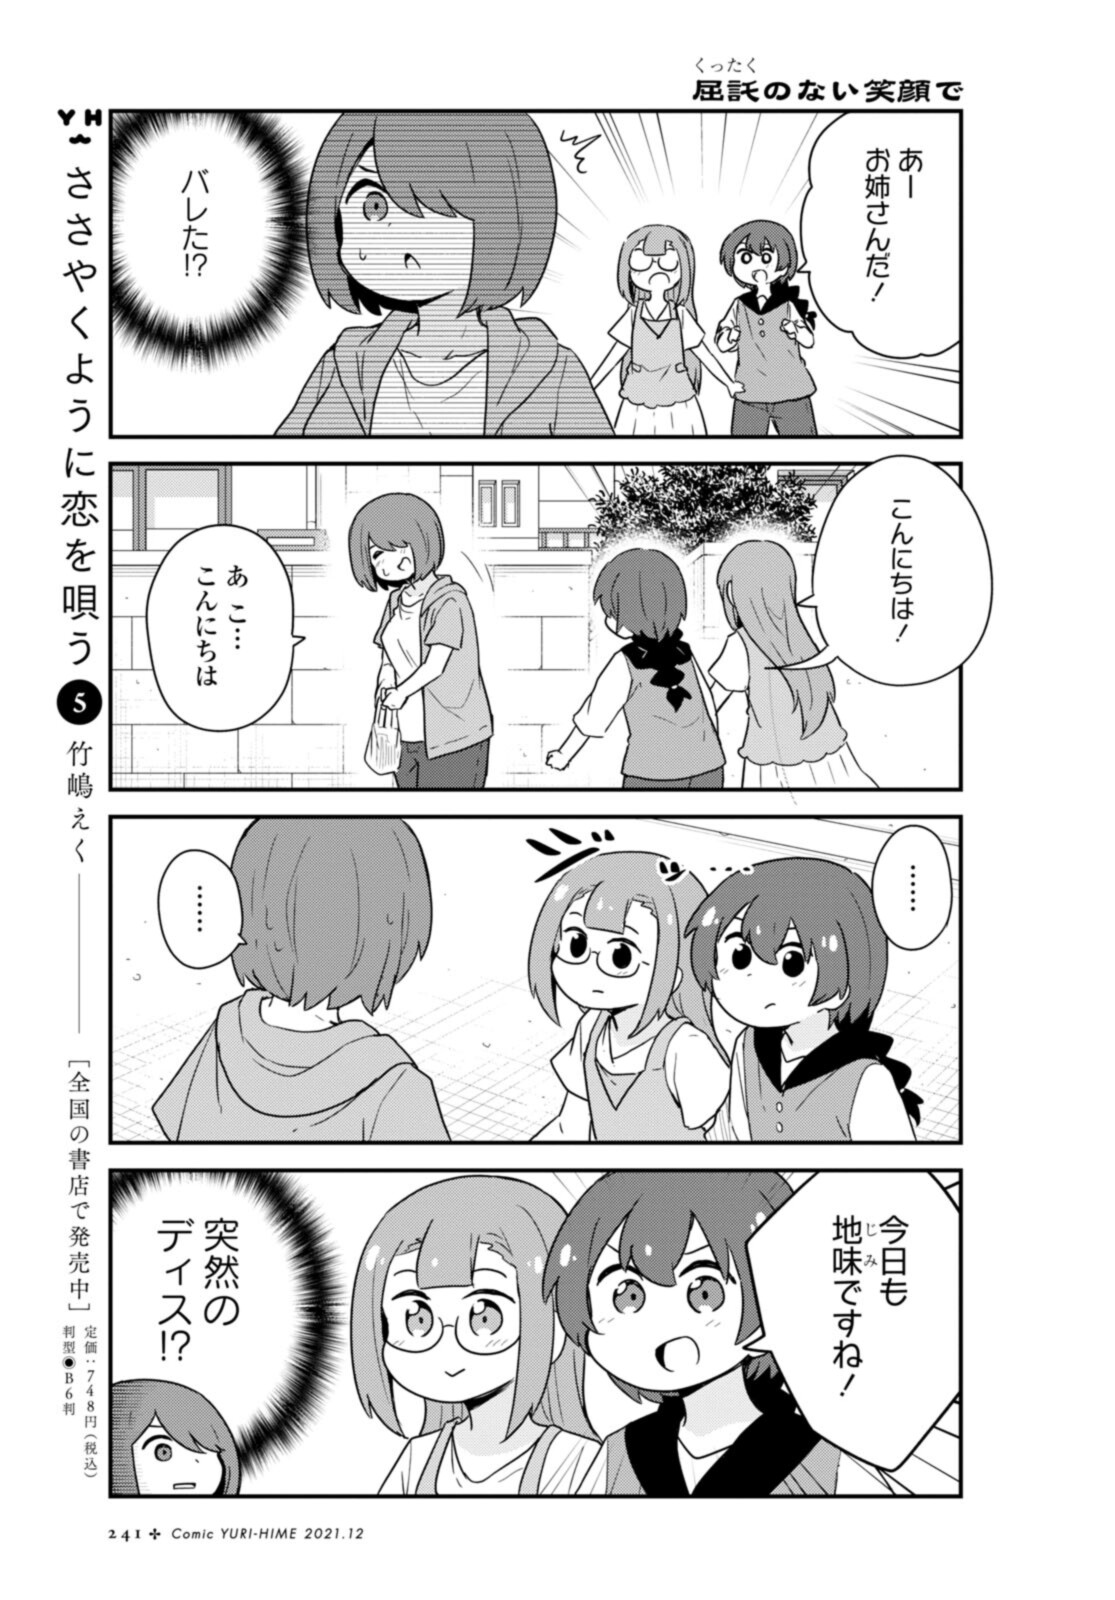 Watashi ni Tenshi ga Maiorita! - Chapter 89 - Page 3